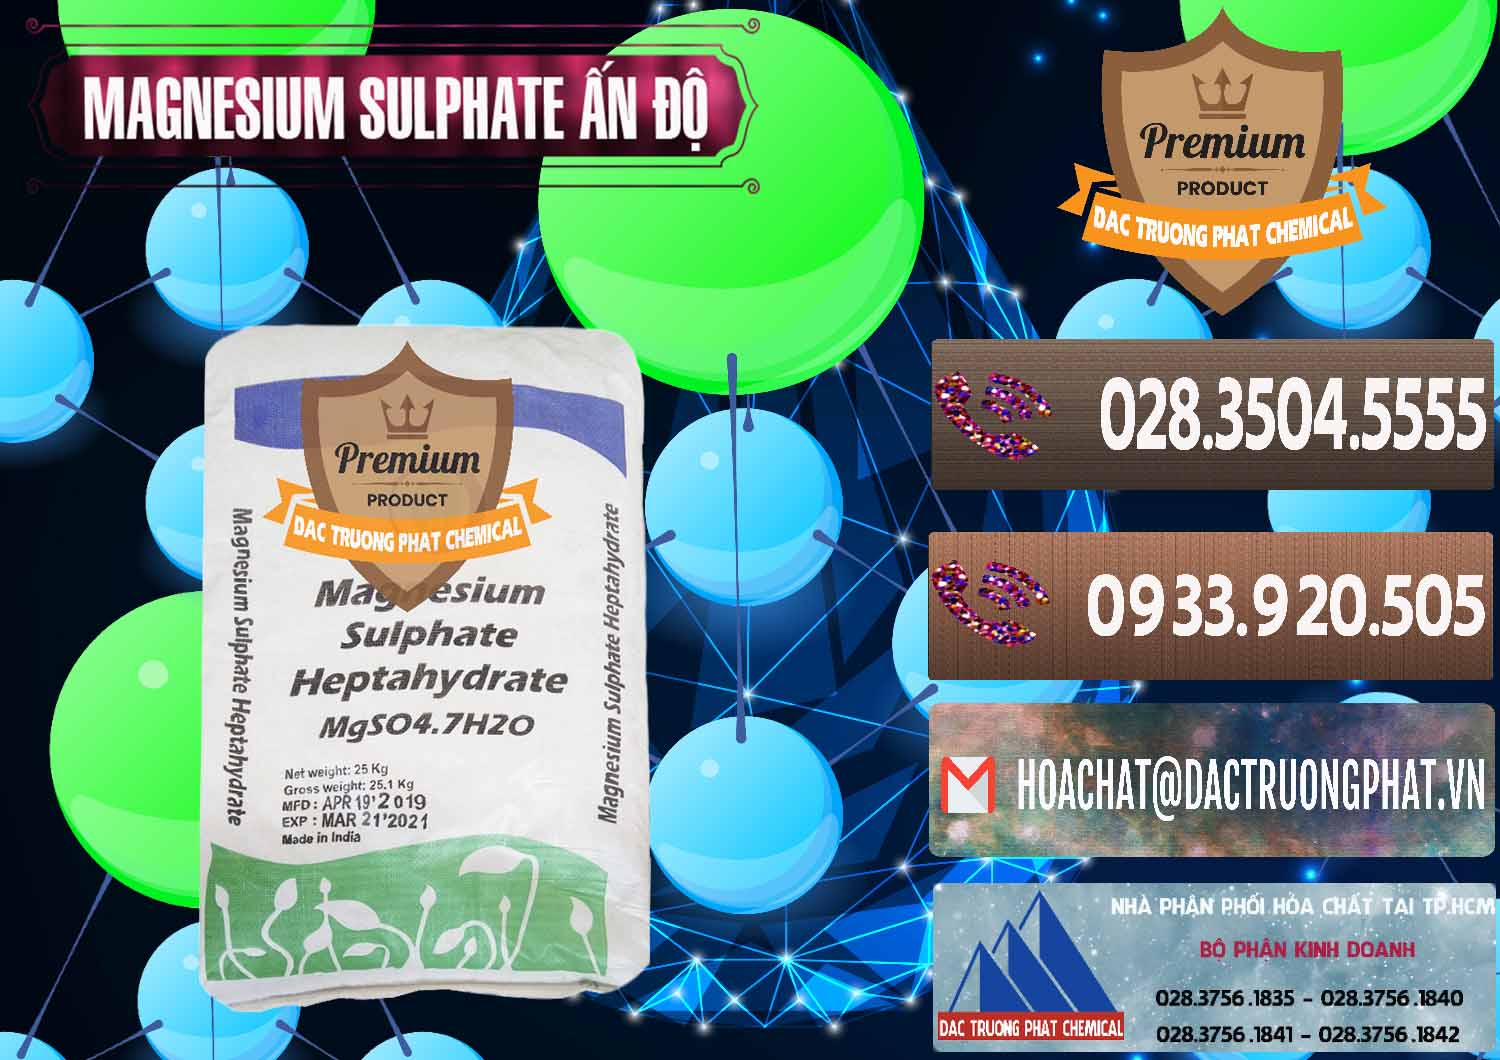 Cty bán ( cung ứng ) MGSO4.7H2O – Magnesium Sulphate Heptahydrate Ấn Độ India - 0362 - Cty nhập khẩu & phân phối hóa chất tại TP.HCM - hoachatviet.net